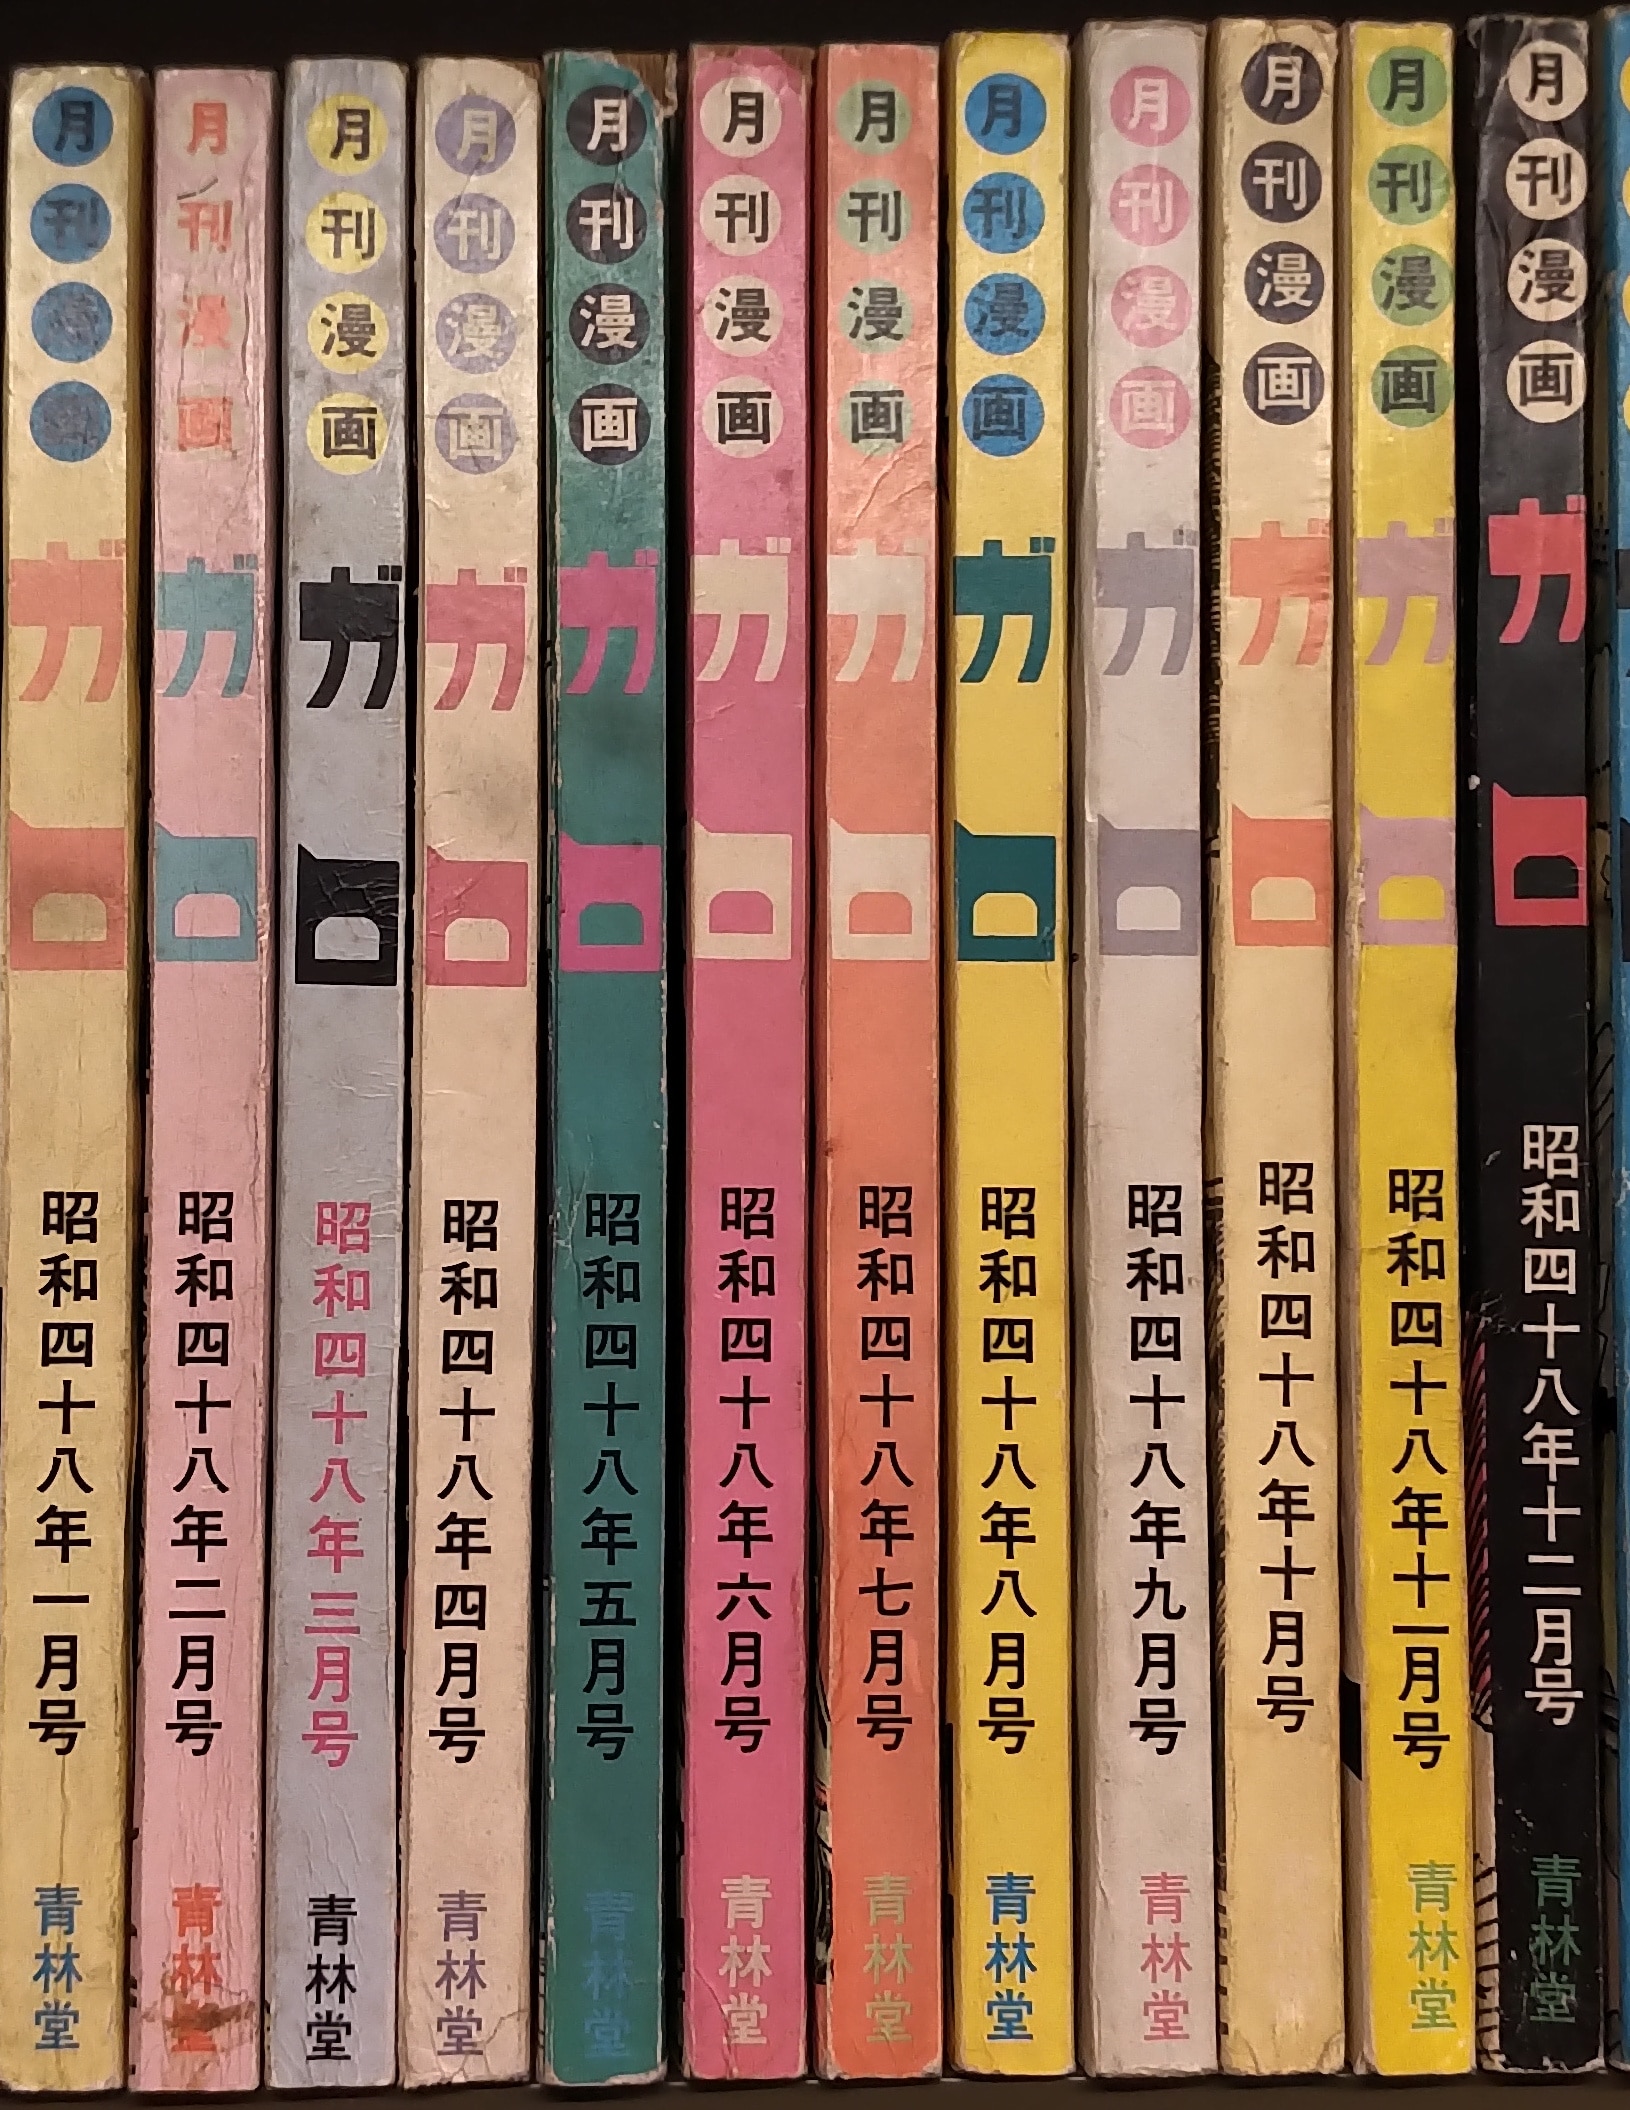 青林堂 1973年(昭和48年)の漫画雑誌 月刊ガロ1973年(昭和48年)通年 